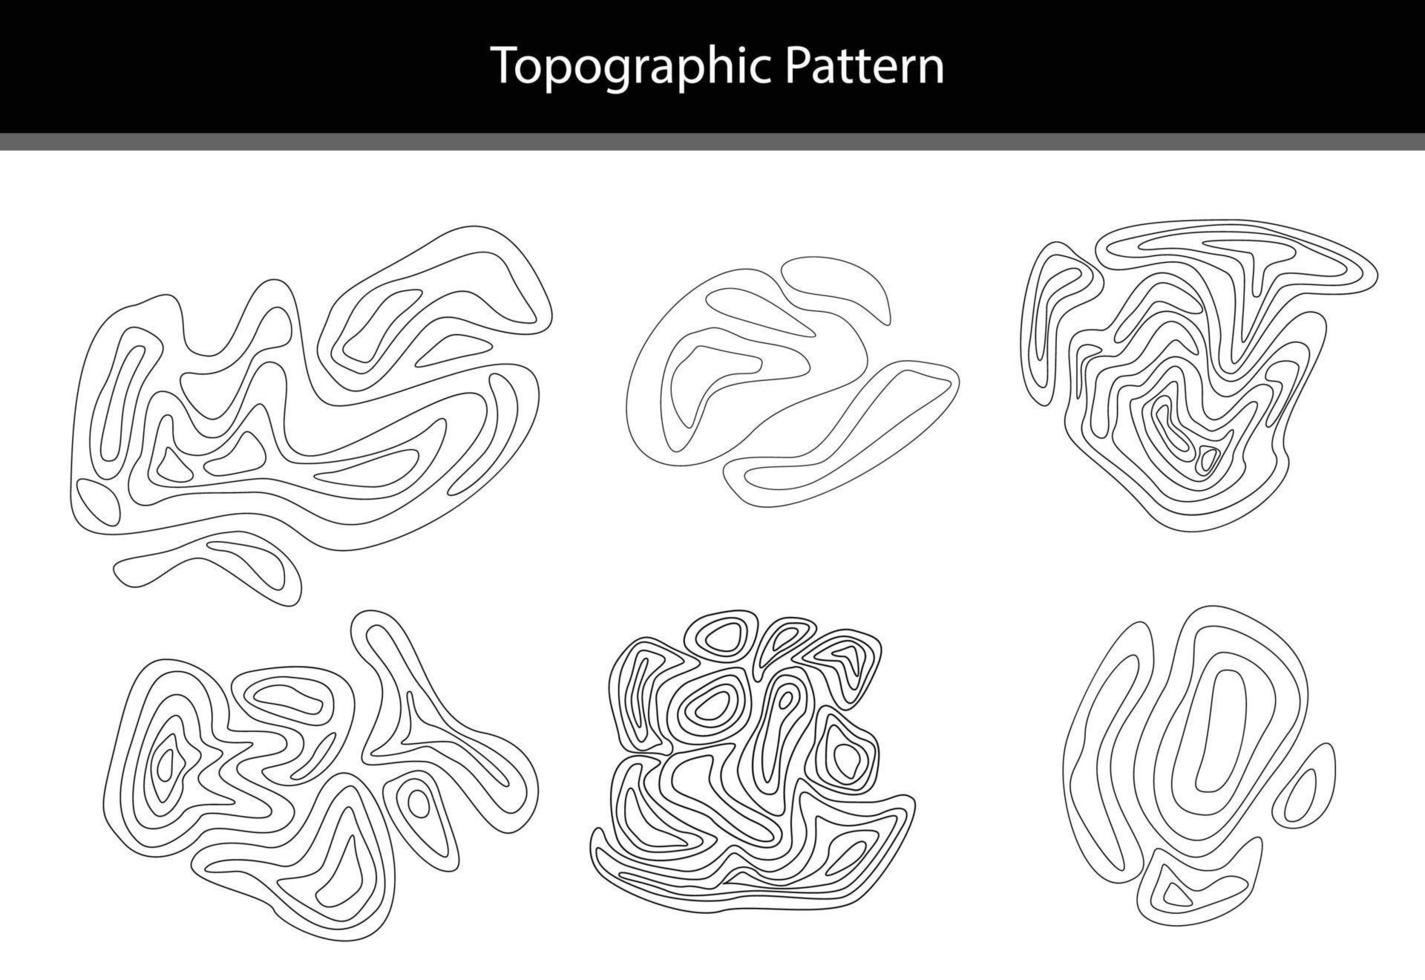 modèle de topographie et carte géographique, ligne abstraite, illustration vectorielle vecteur